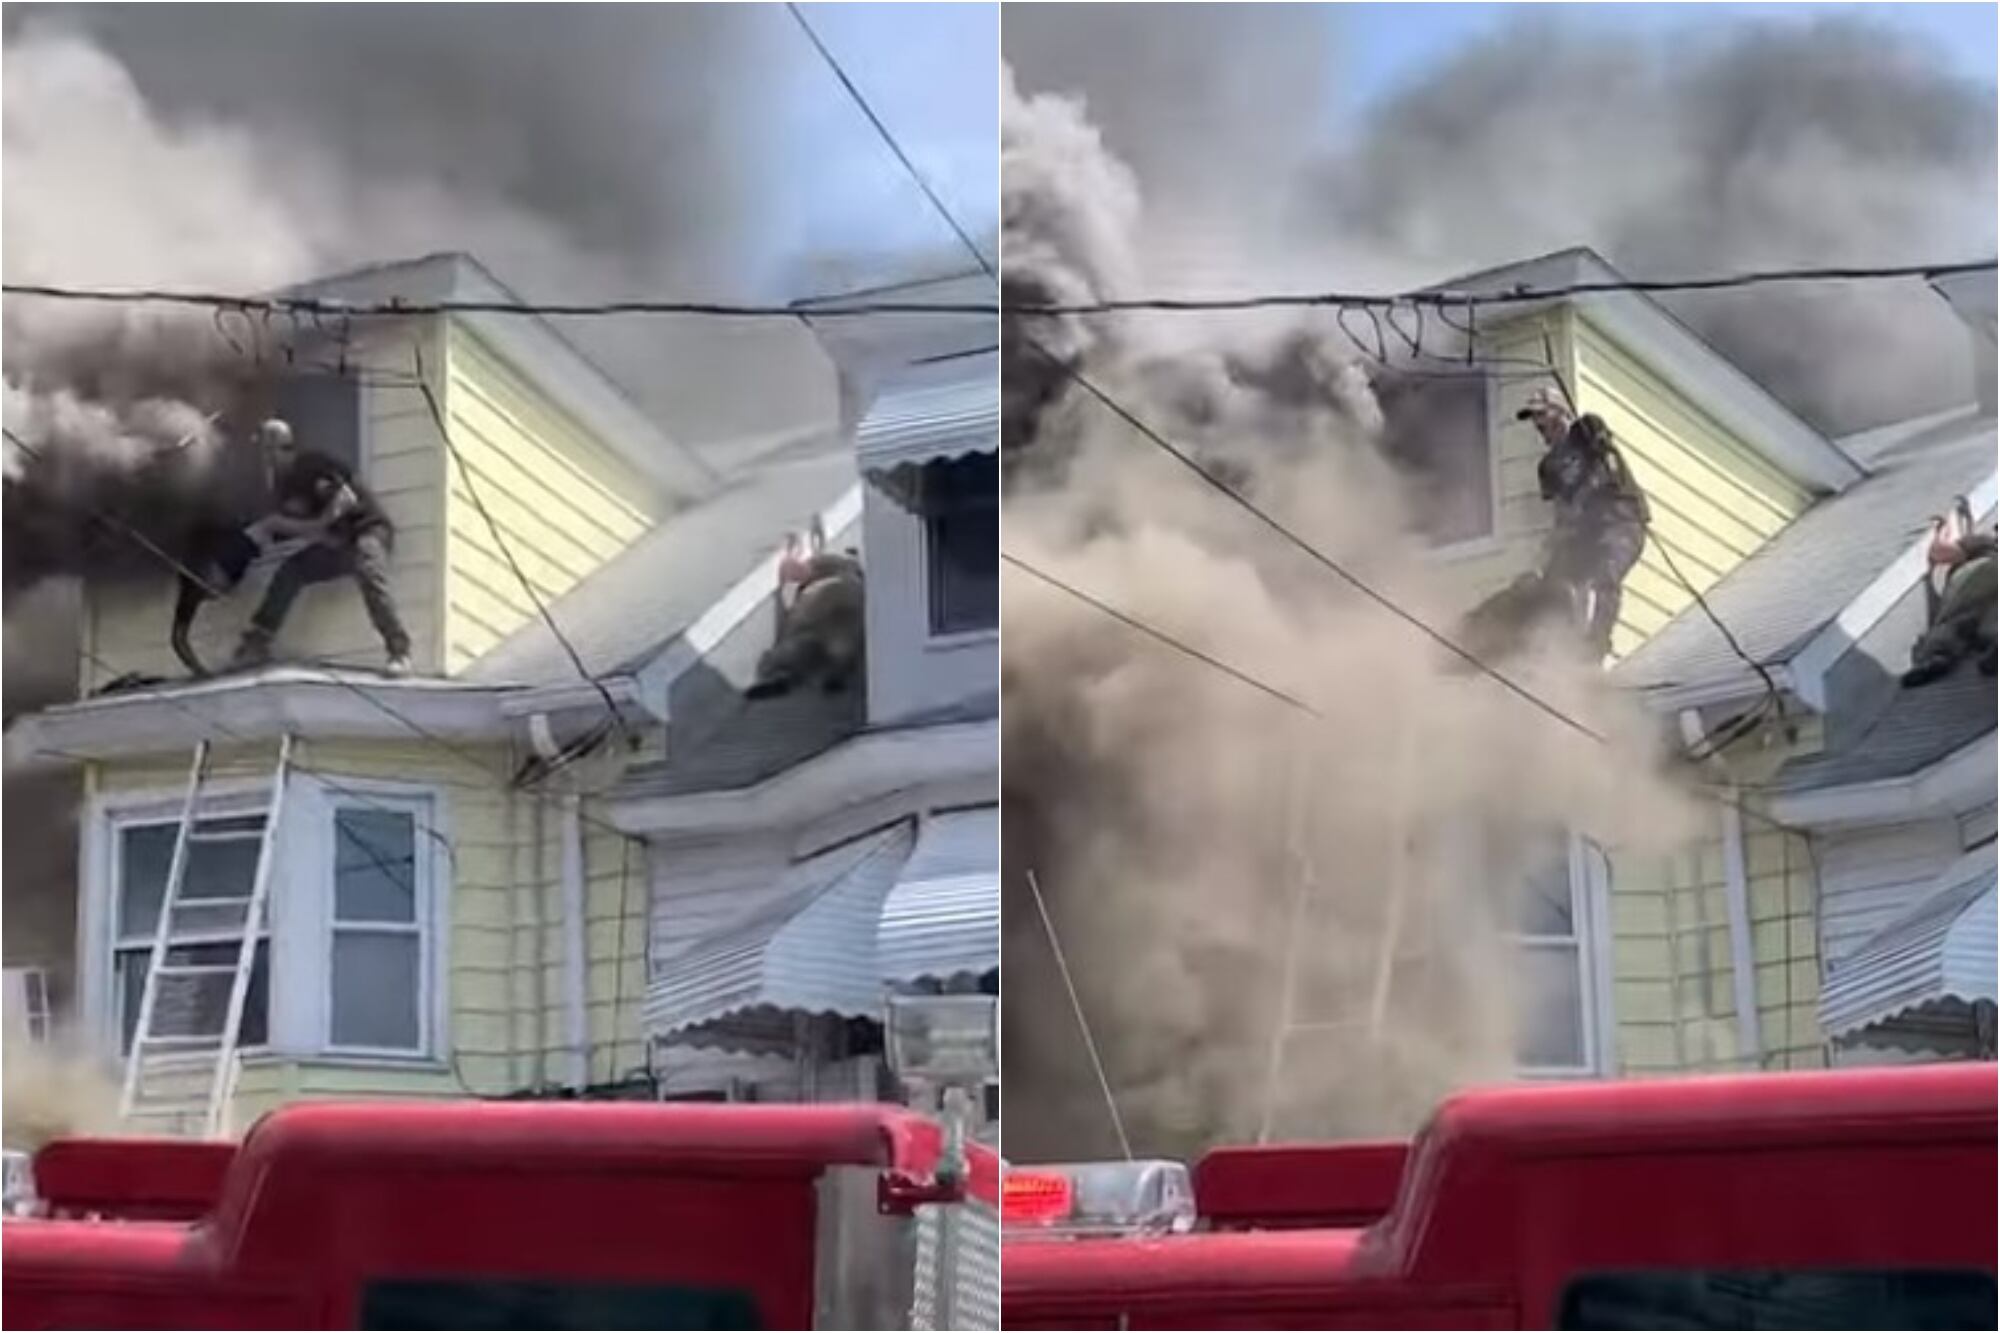 Se incendió su casa, quedaron atrapados y fueron rescatados desde el techo por su vecino: “Un verdadero héroe”